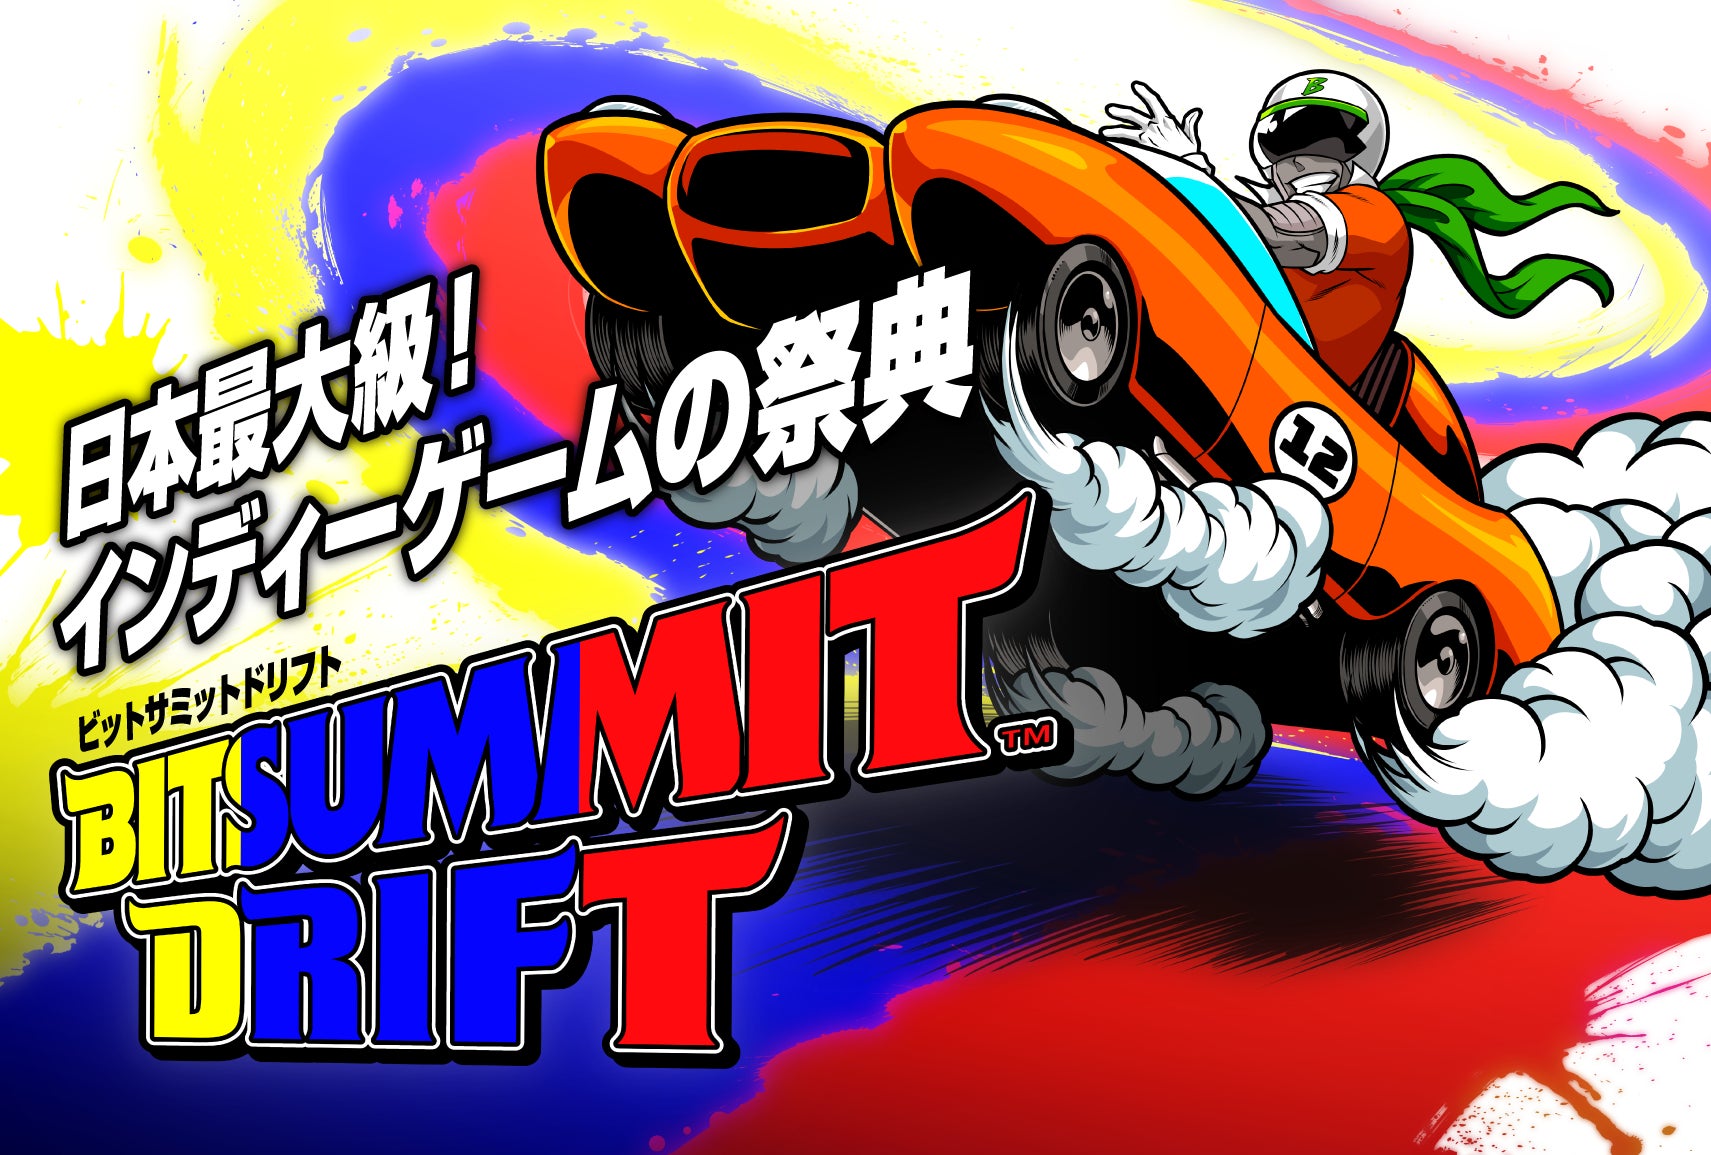 インディーゲームの祭典「BitSummit Drift」オフィシャルセレクション公開のお知らせ